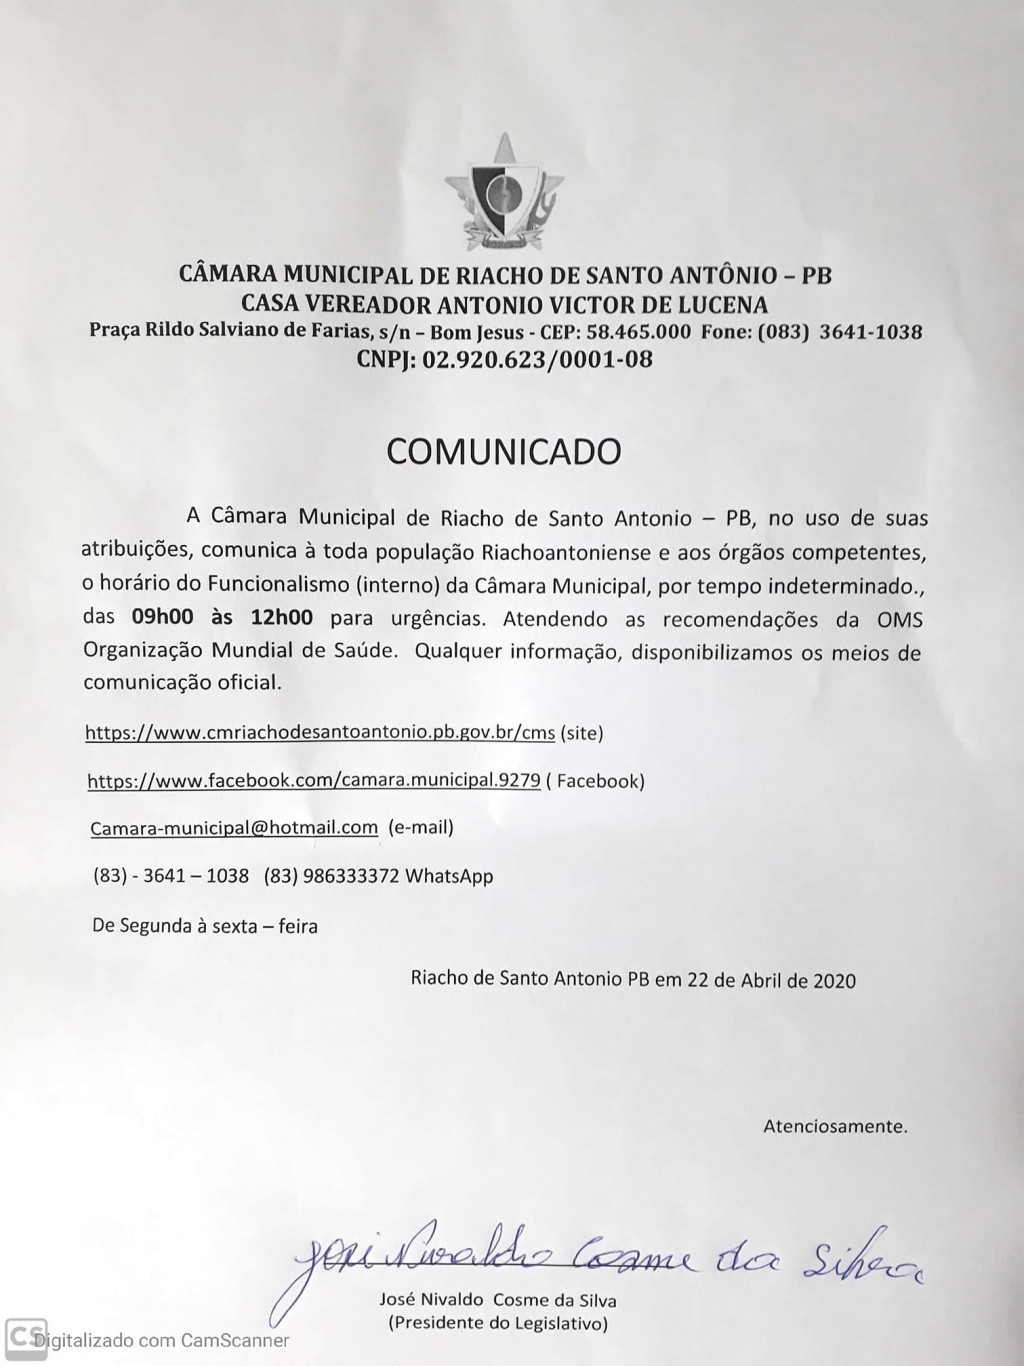 Comunicado sobre o expediente da Câmara Municipal de Riacho de Santo Antonio durante o COVID19